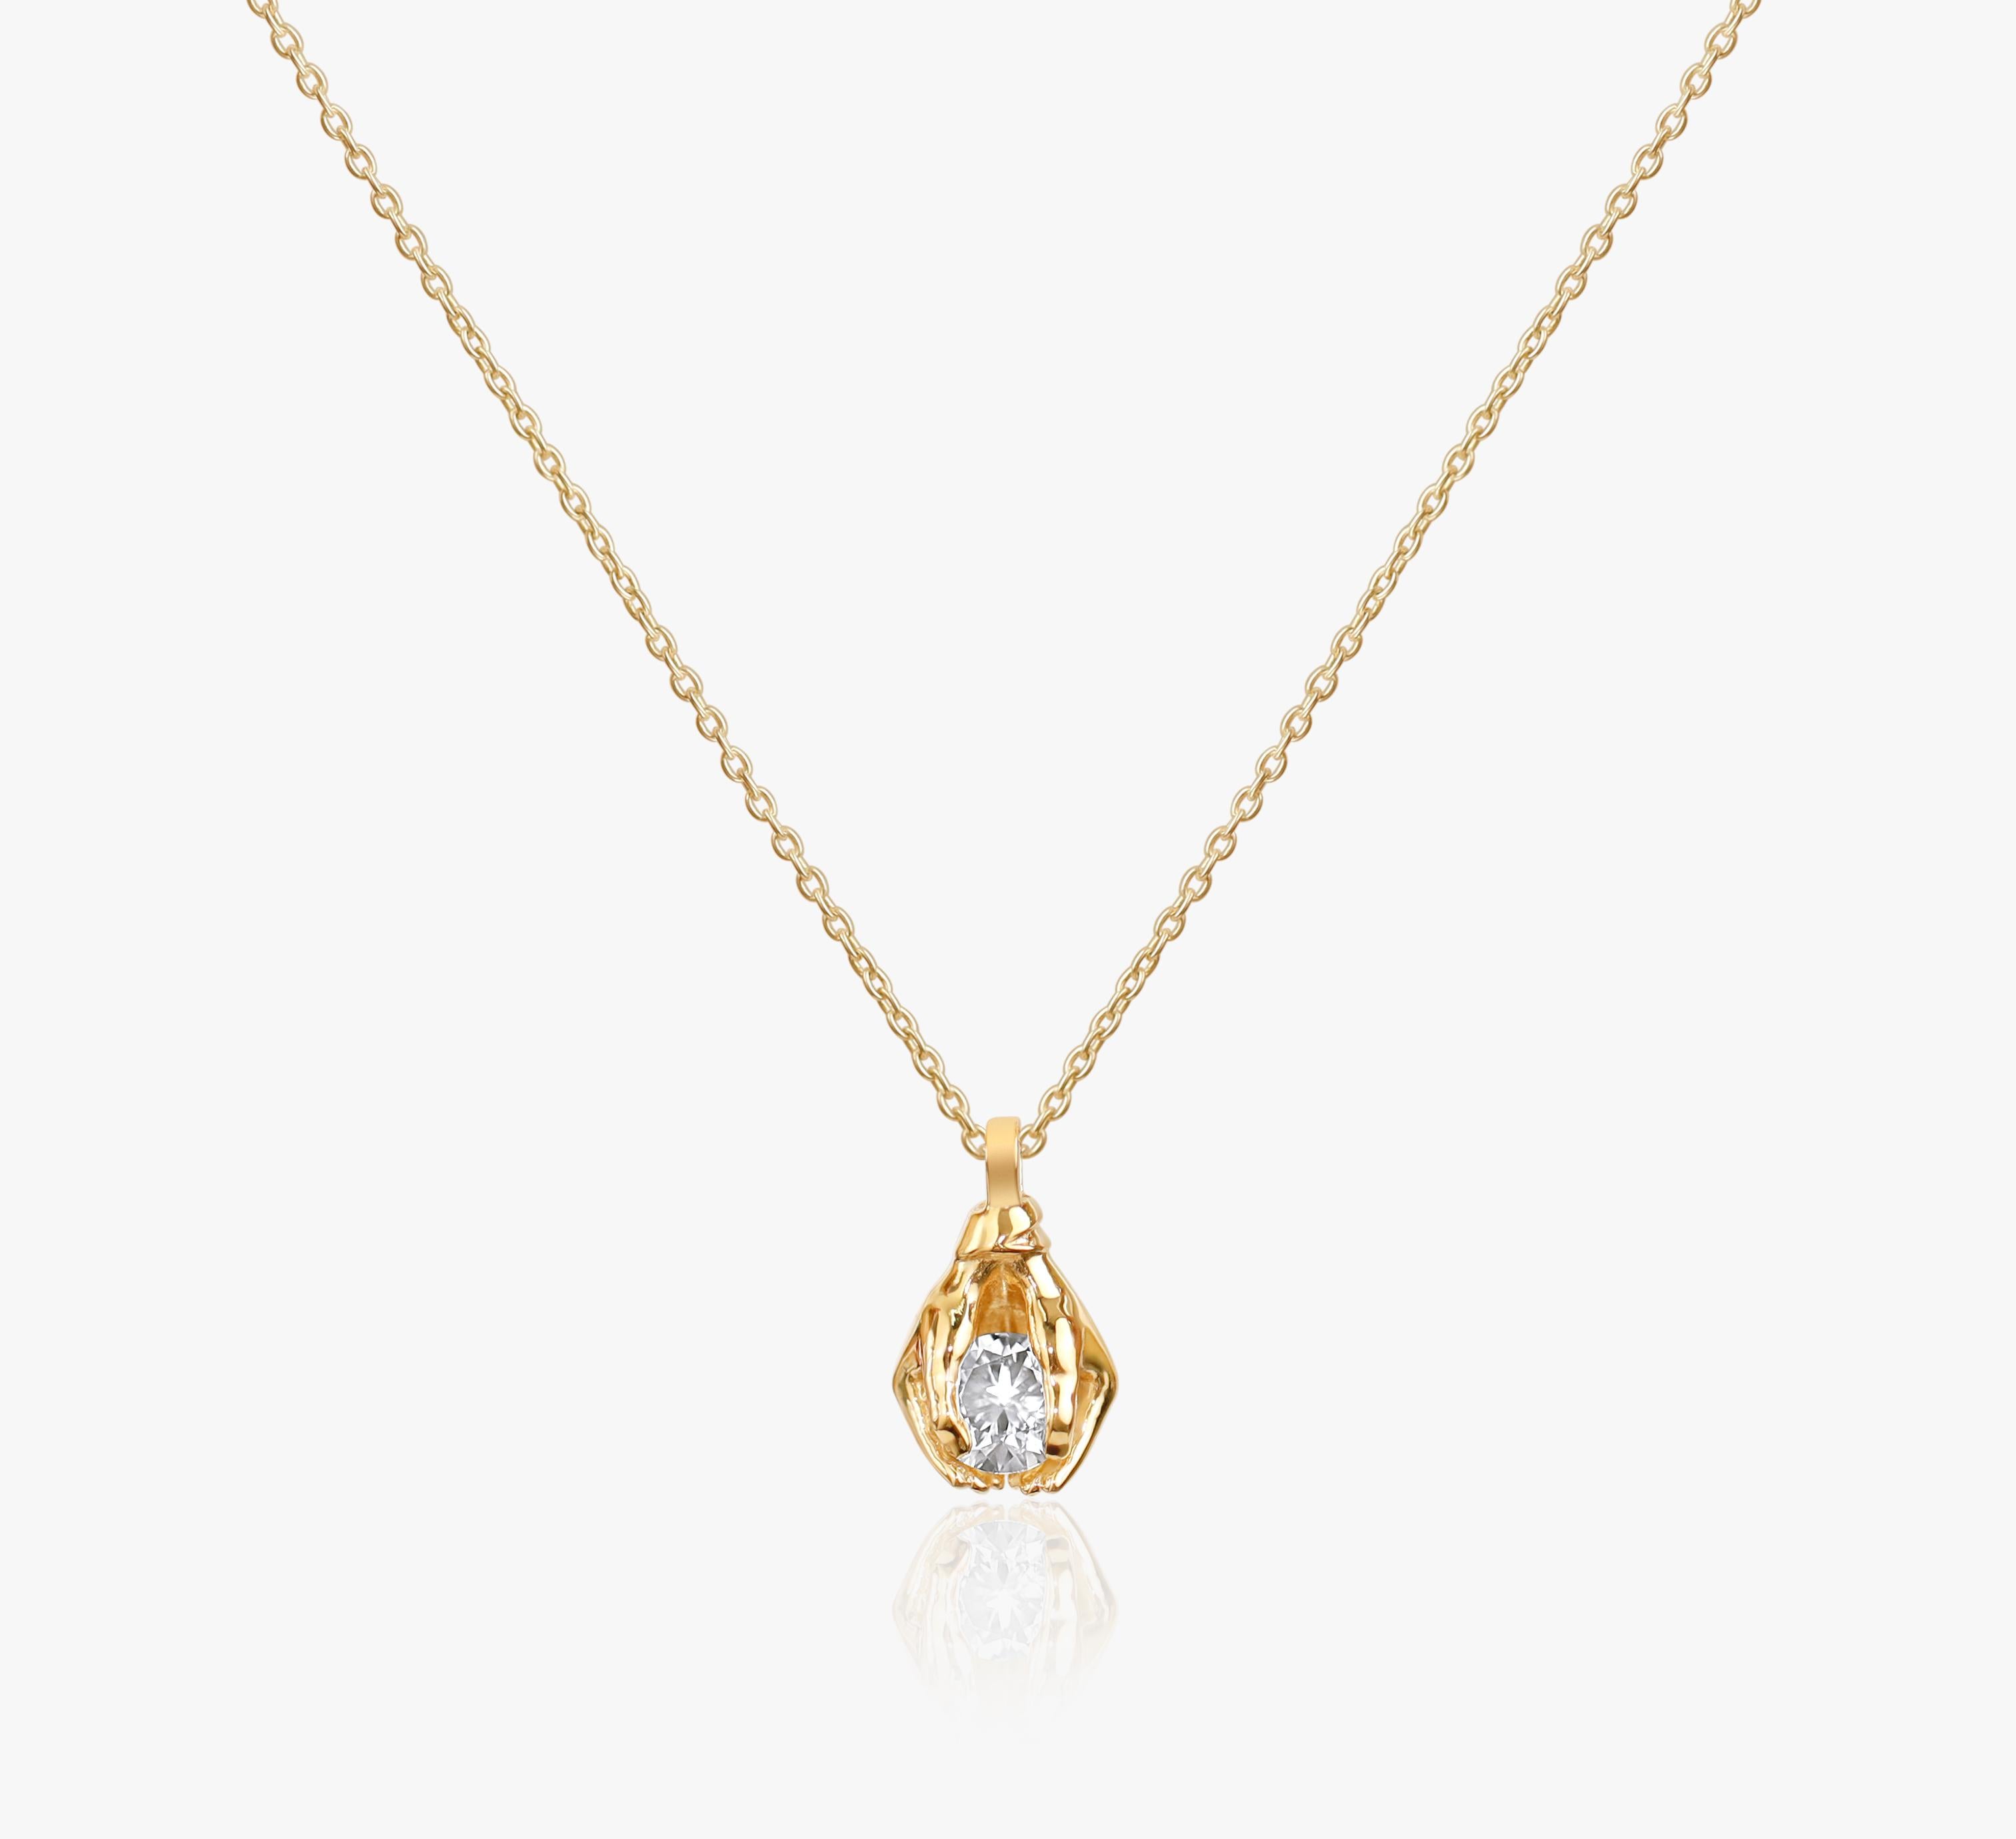 GIA Report Certified 1 Carat D Flawless Round Cut Diamond Pendant Necklace

Disponible en or jaune 18 carats.

Le même design peut être réalisé avec d'autres pierres précieuses sur demande.

Détails du produit :

- Or massif 18k jaune 

- Pierre